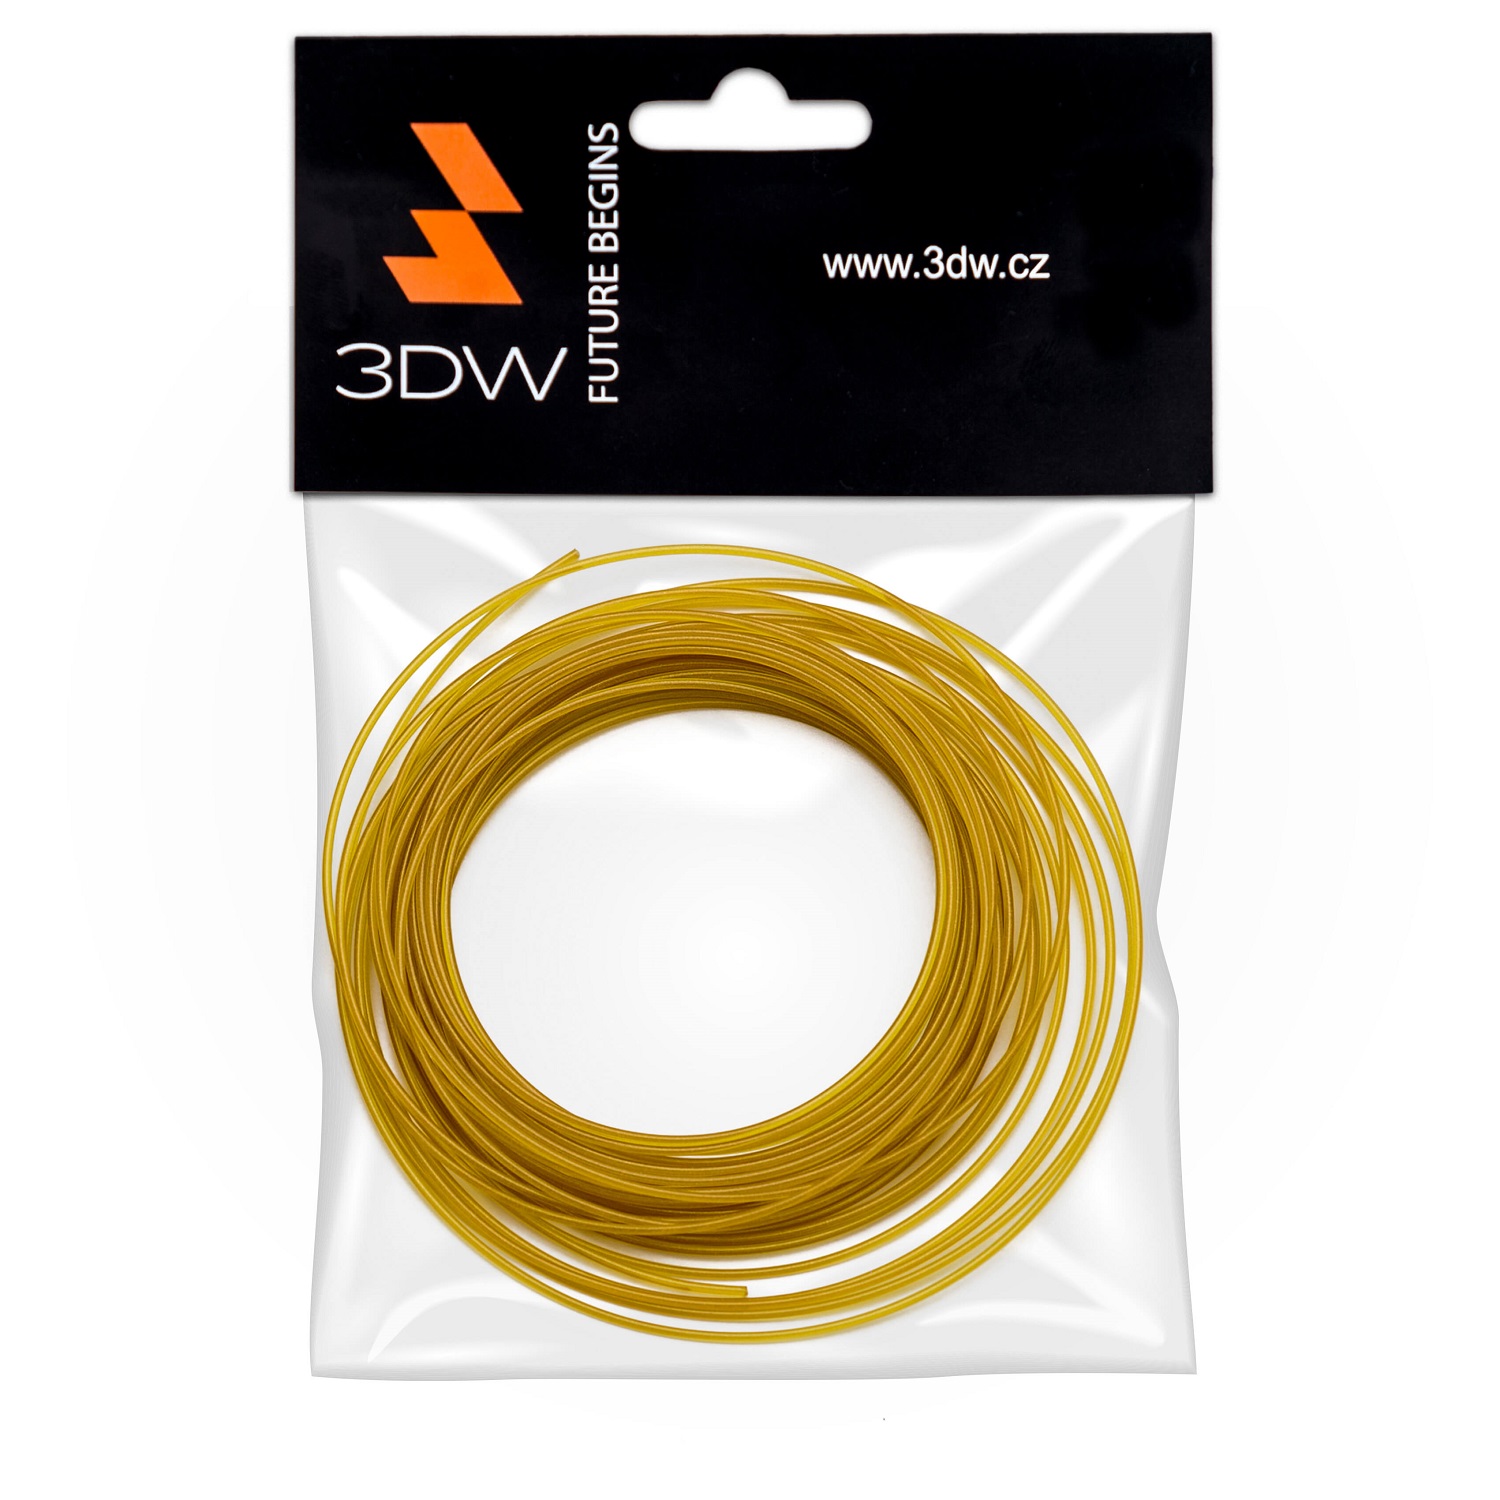 Tisková struna 3DW (filament) PLA, 1,75mm, 10m, zlatá, 200-230°C